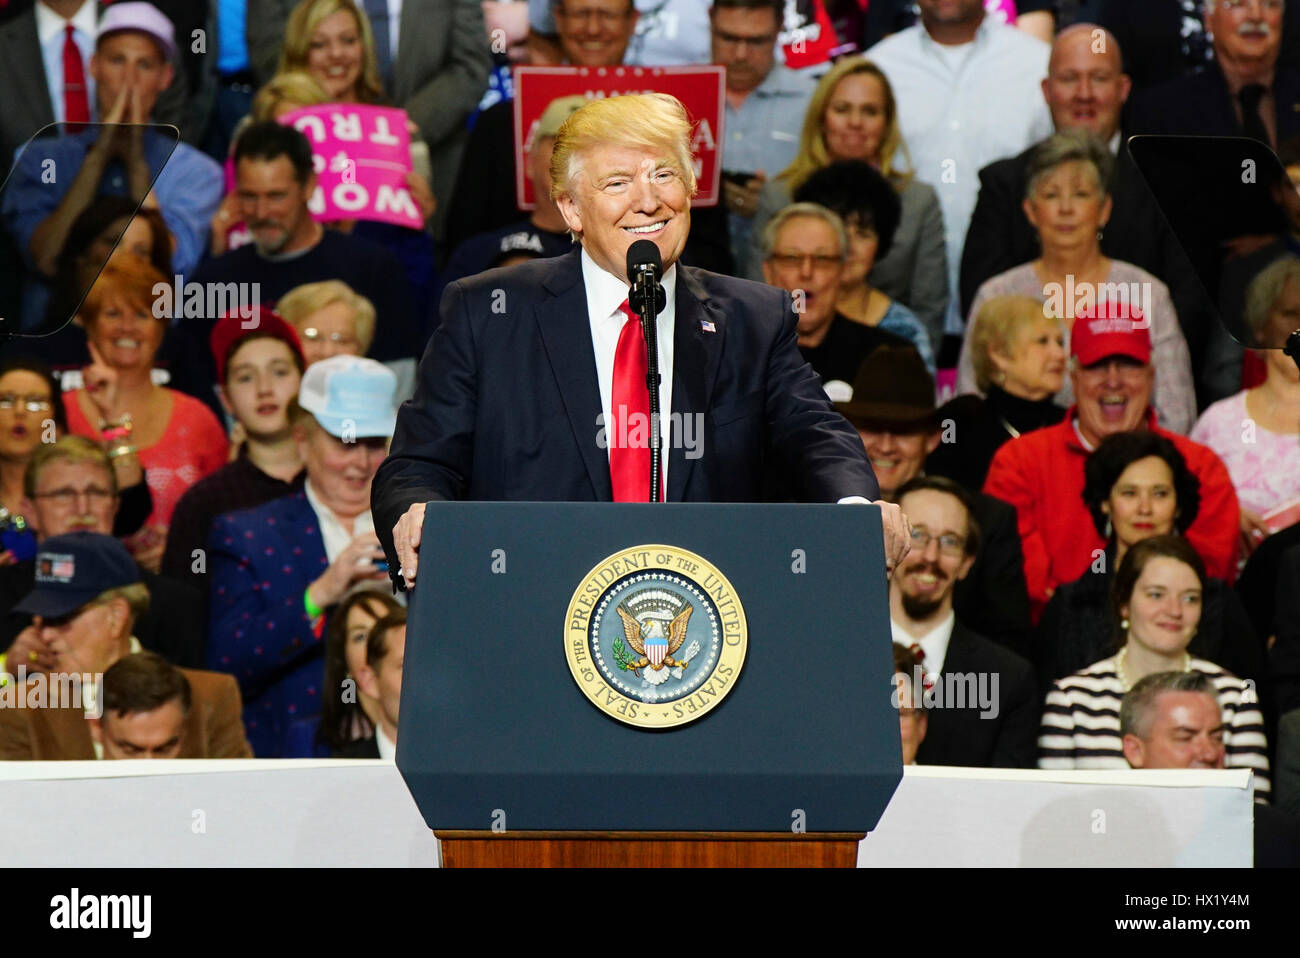 Präsident Donald J Trump spricht während einer Kundgebung in Louisville Exposition Center am 20. März 2017 in Louisville, Kentucky. Stockfoto